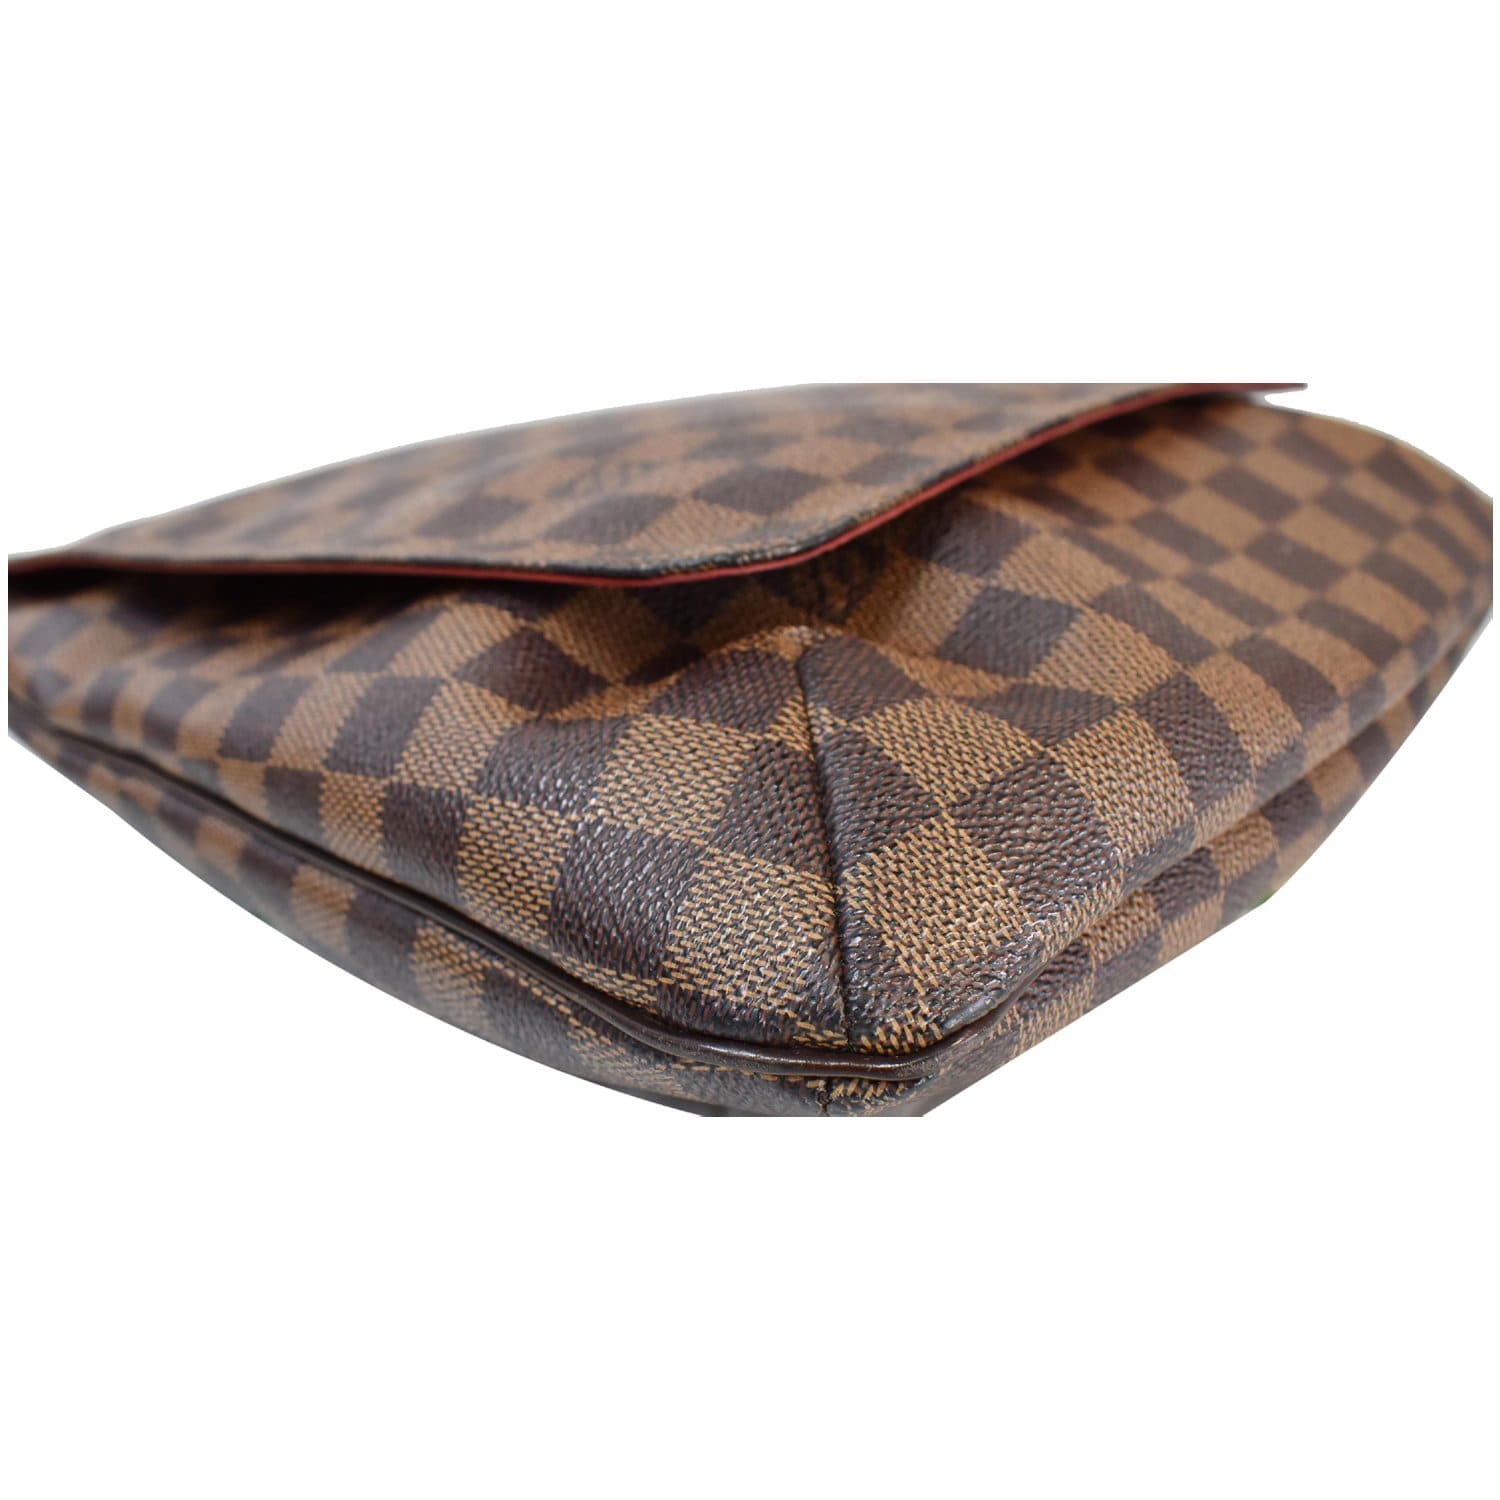 Authentic Louis Vuitton Musette Salsa GM Monogram Shoulder bag brown #16919